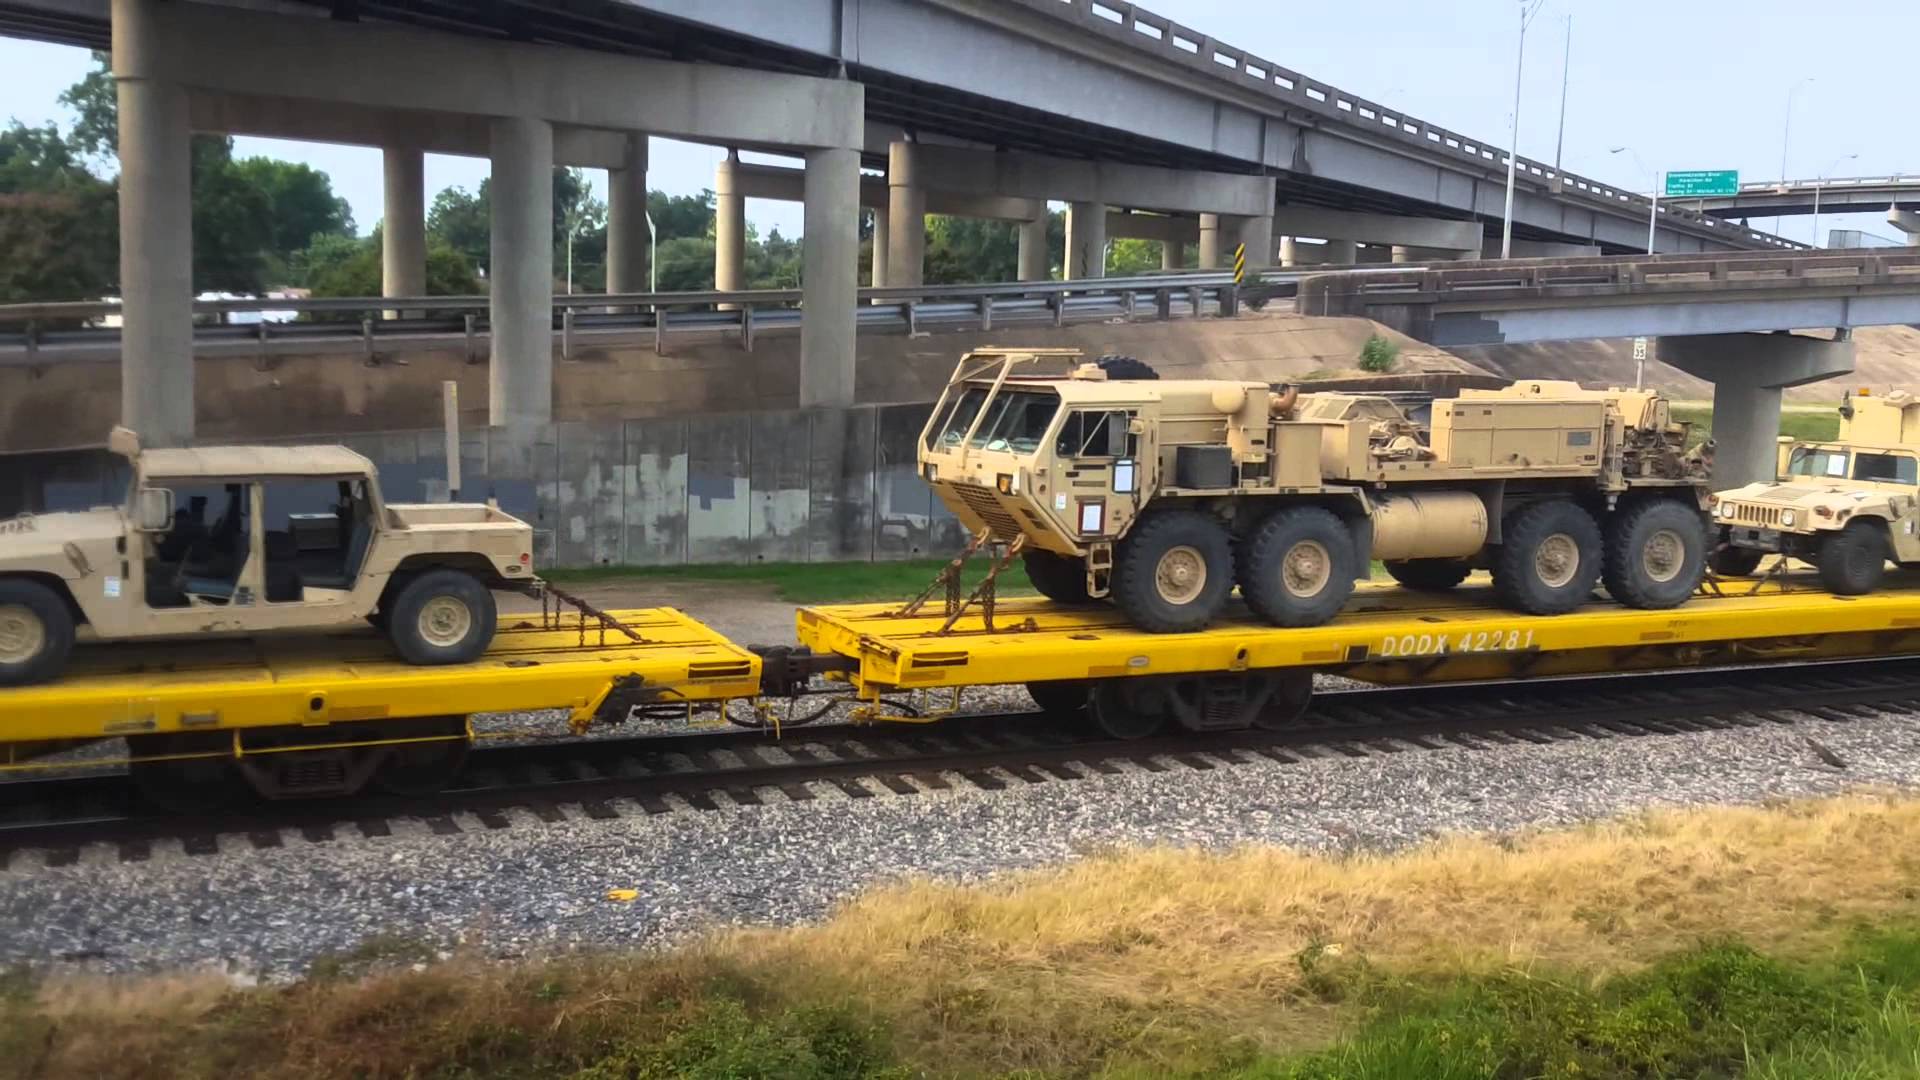 Jade Helm 15 Louisiana Train Load of Army Vehicles - YouTube